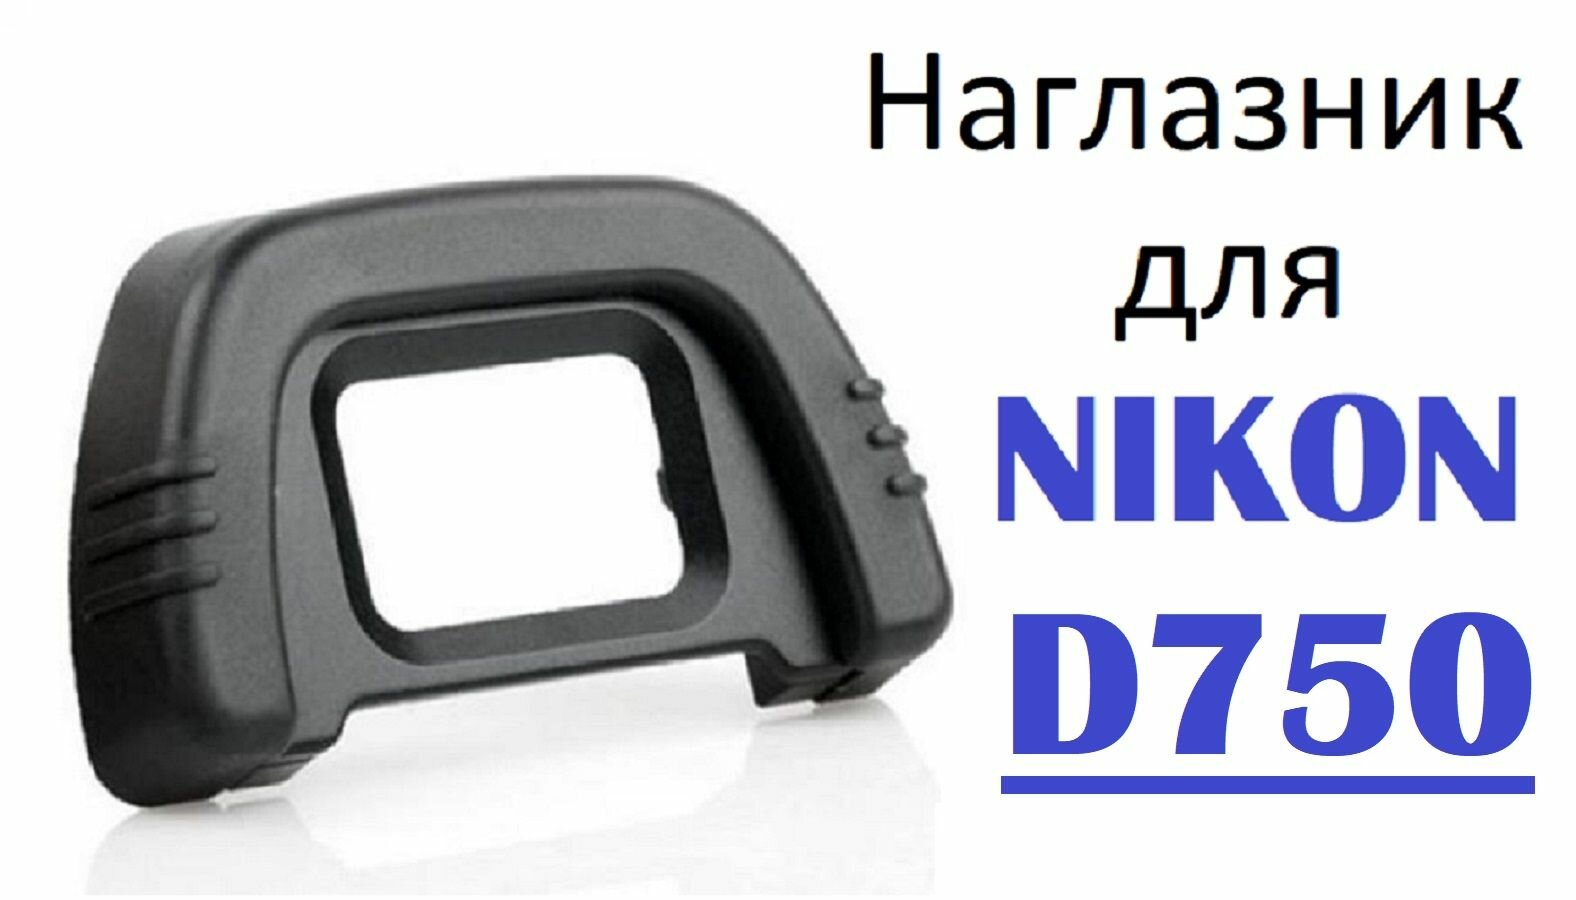 Наглазник на видоискатель Nikon D750